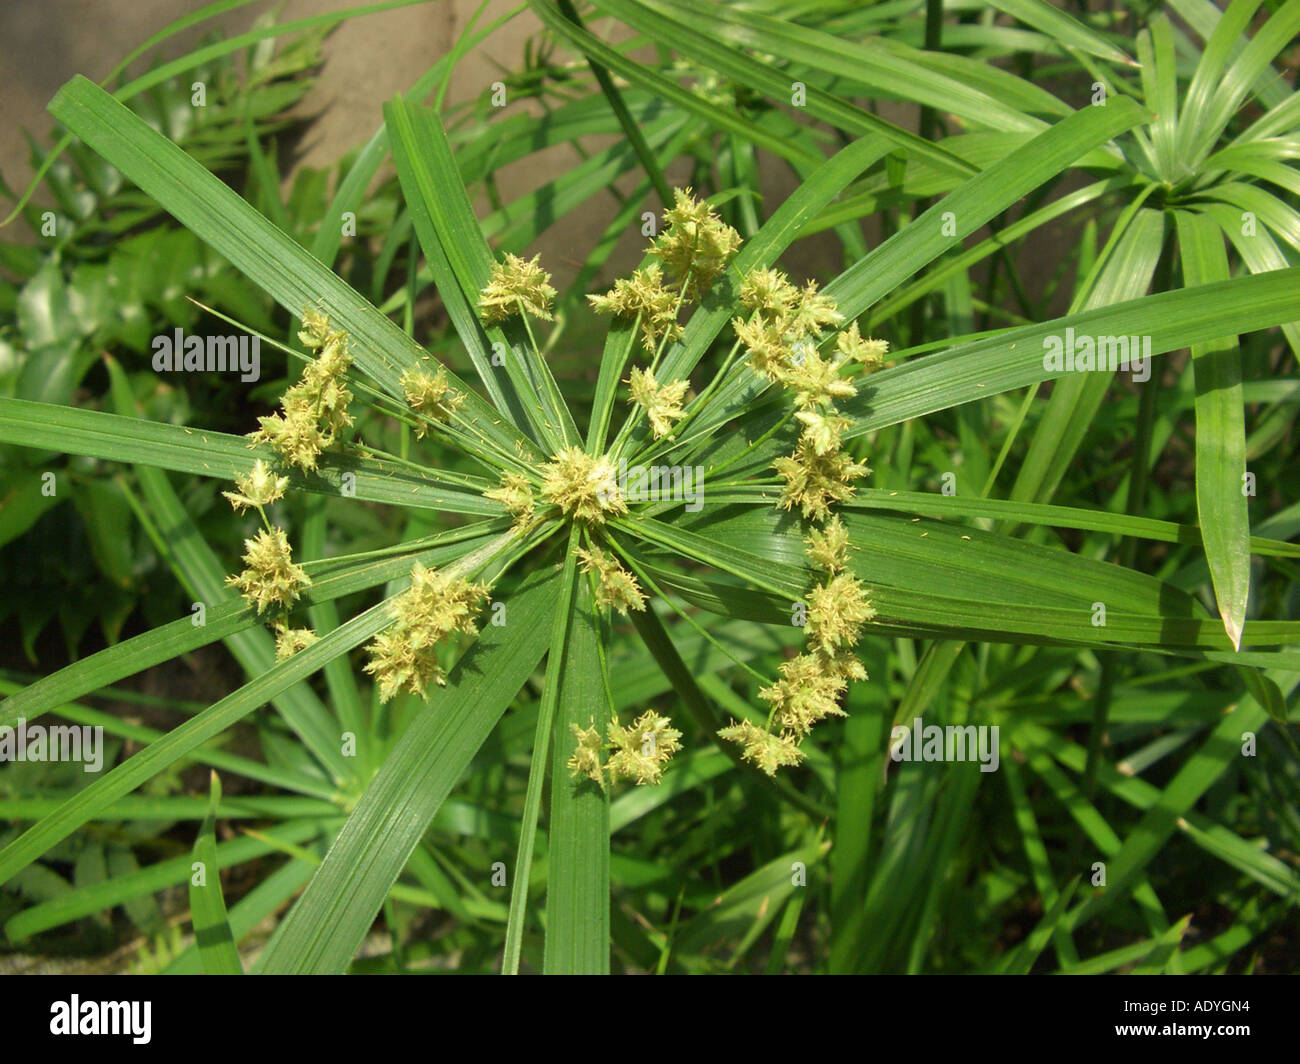 umbrella plant (Cyperus alternifolius), inflorescence Stock Photo